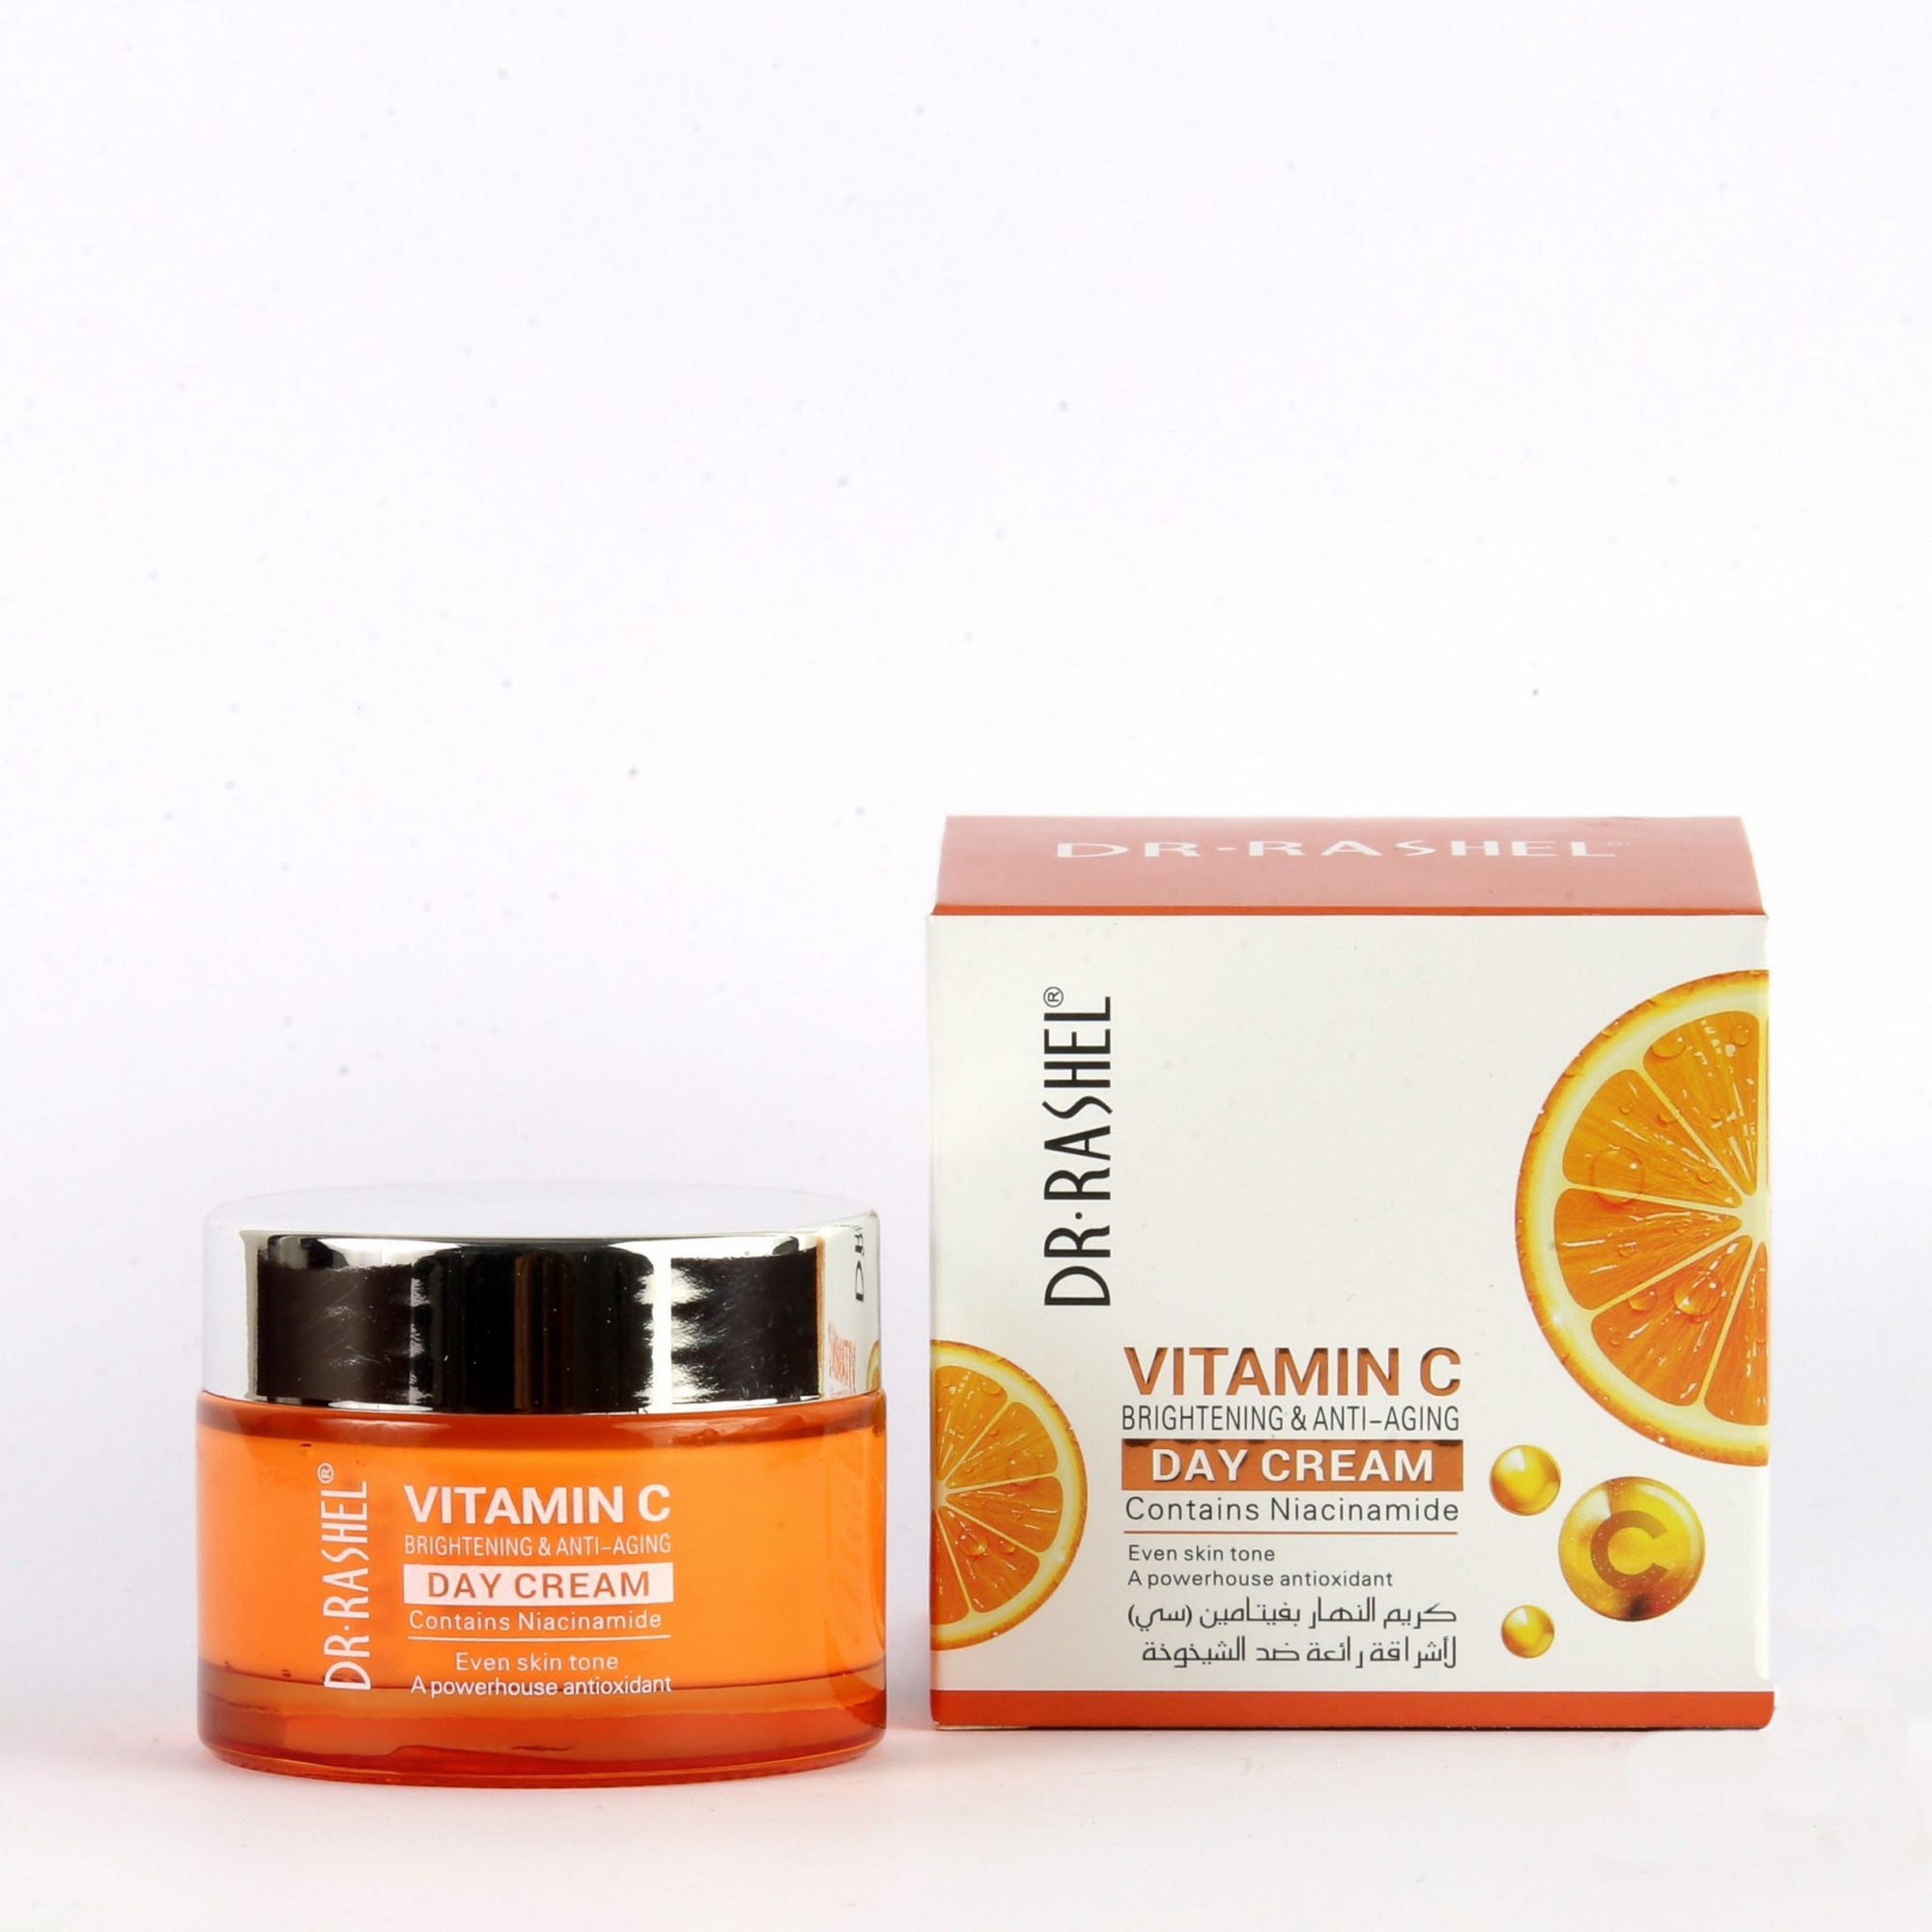 Dr Rashel Vitamin C Day Cream Brightening & Anti Aging 50gms 1509 freeshipping - lasertag.pk